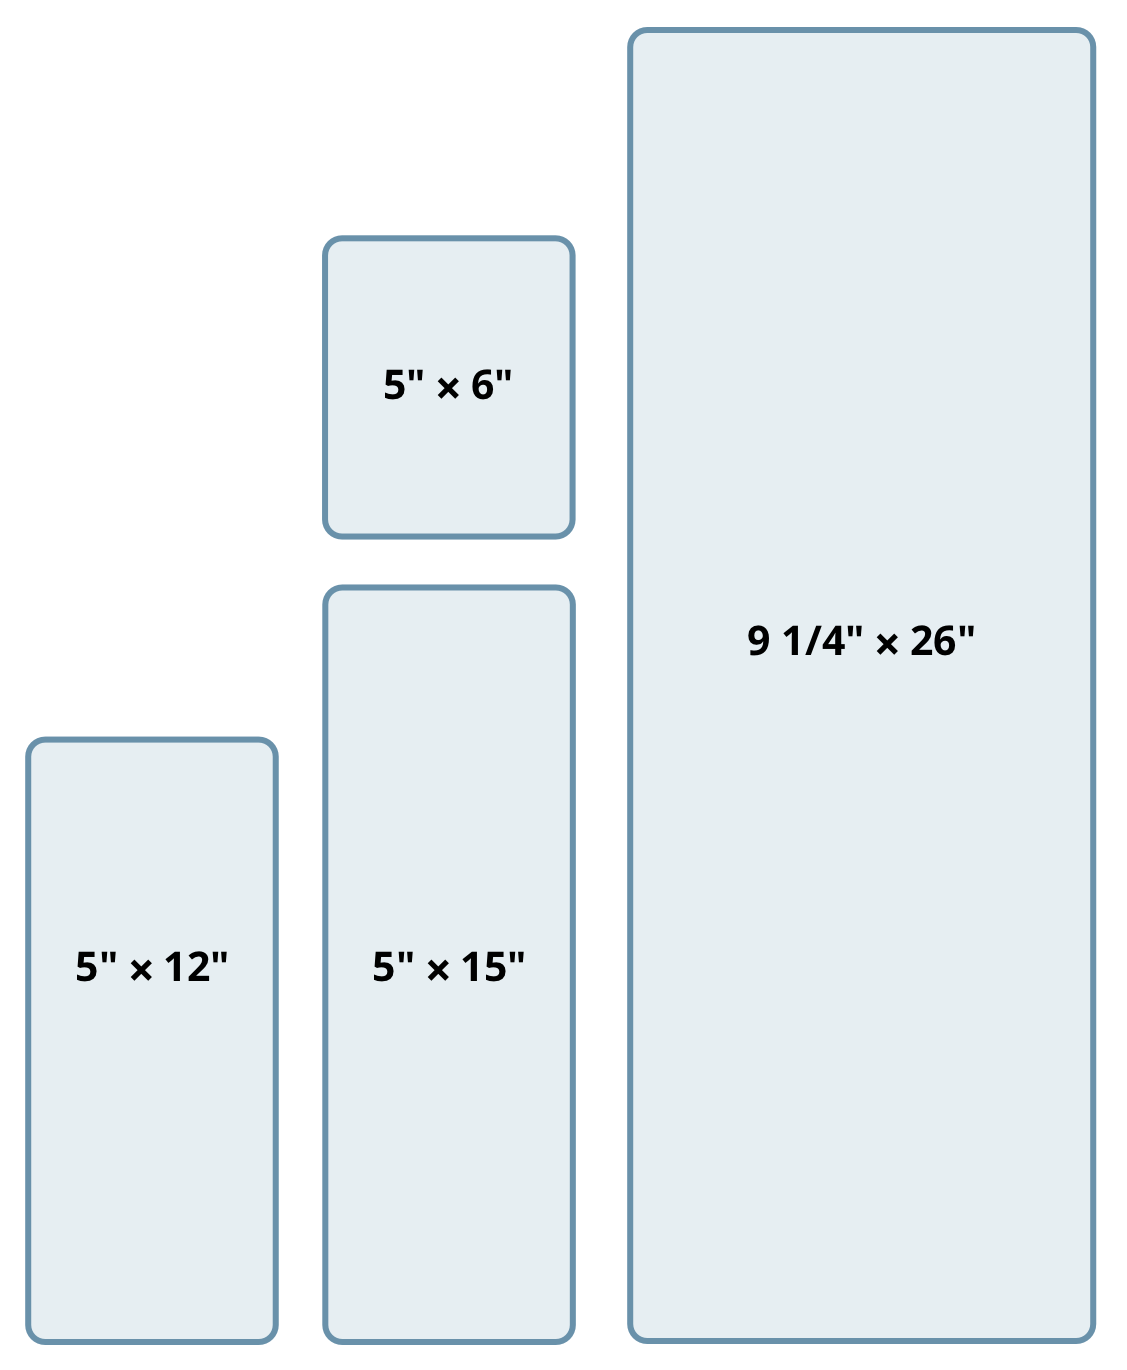 die sizes: 5" × 6", 5" × 12", 5" × 15", 9 1/4" × 26"